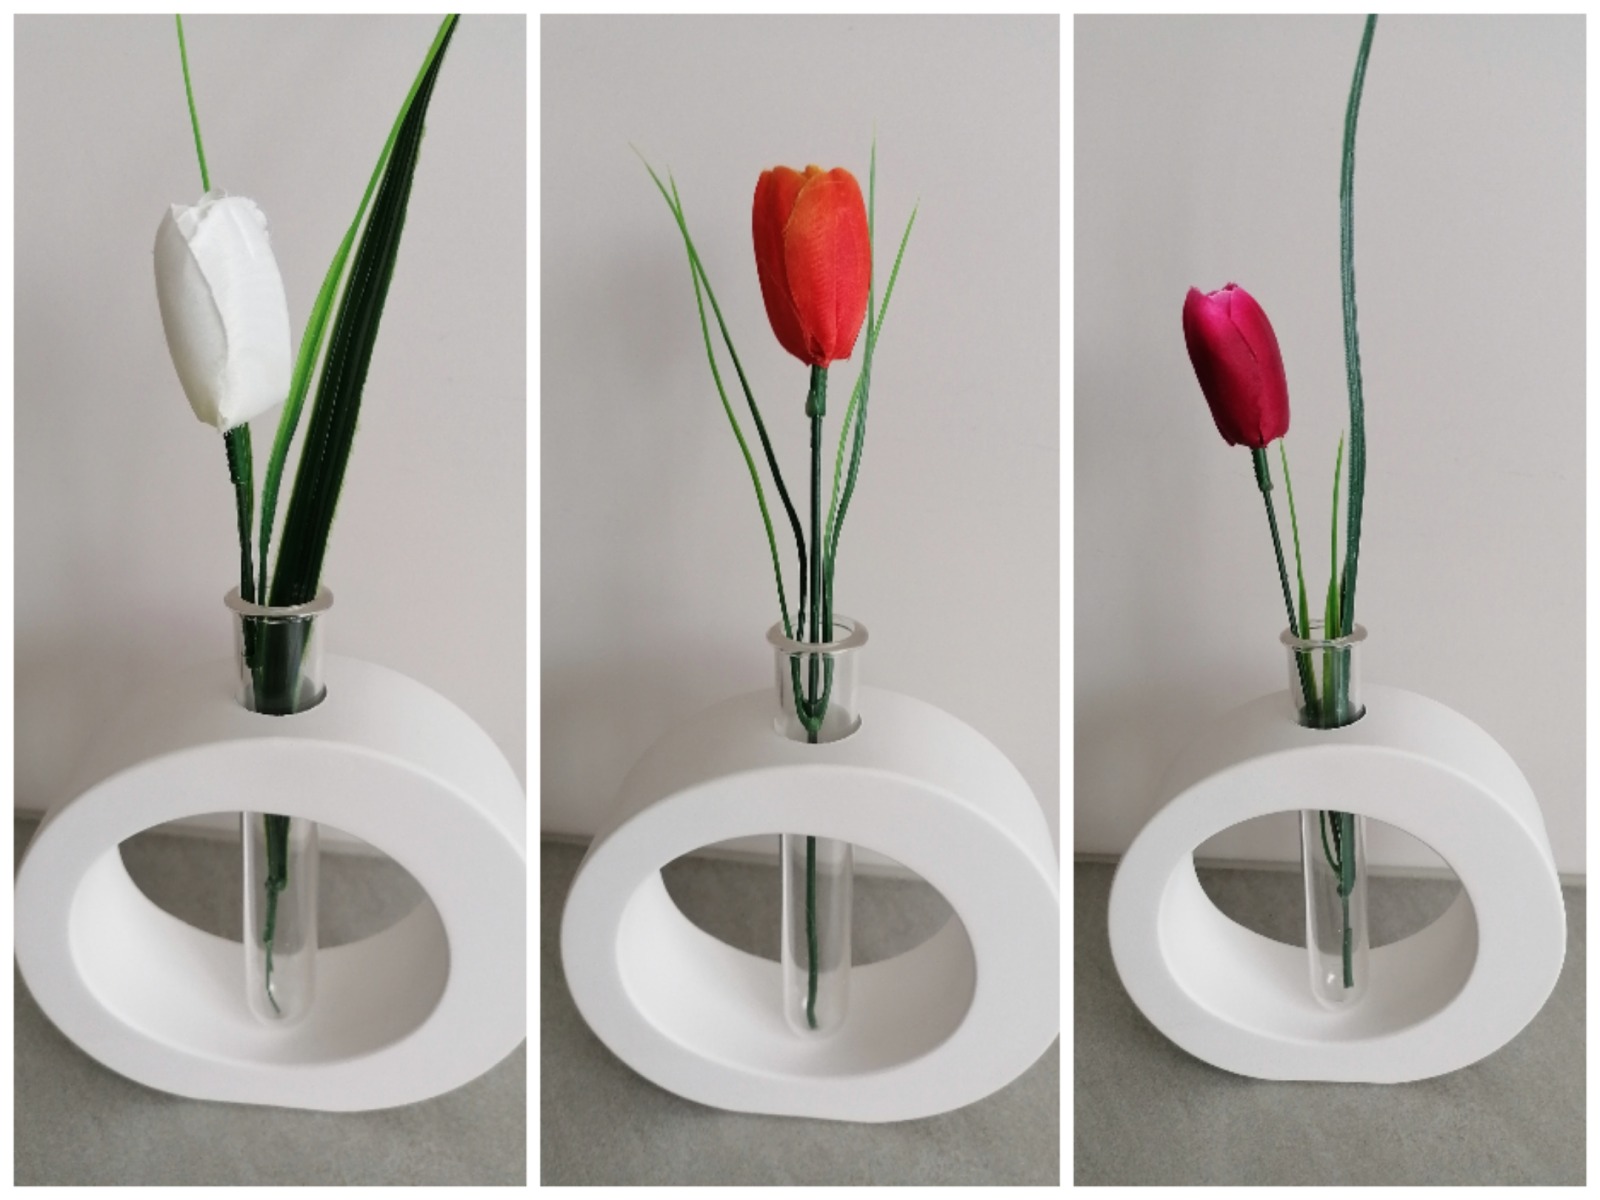 Vase und Frühlingsblume Tulpe, aus Keraflott weiß